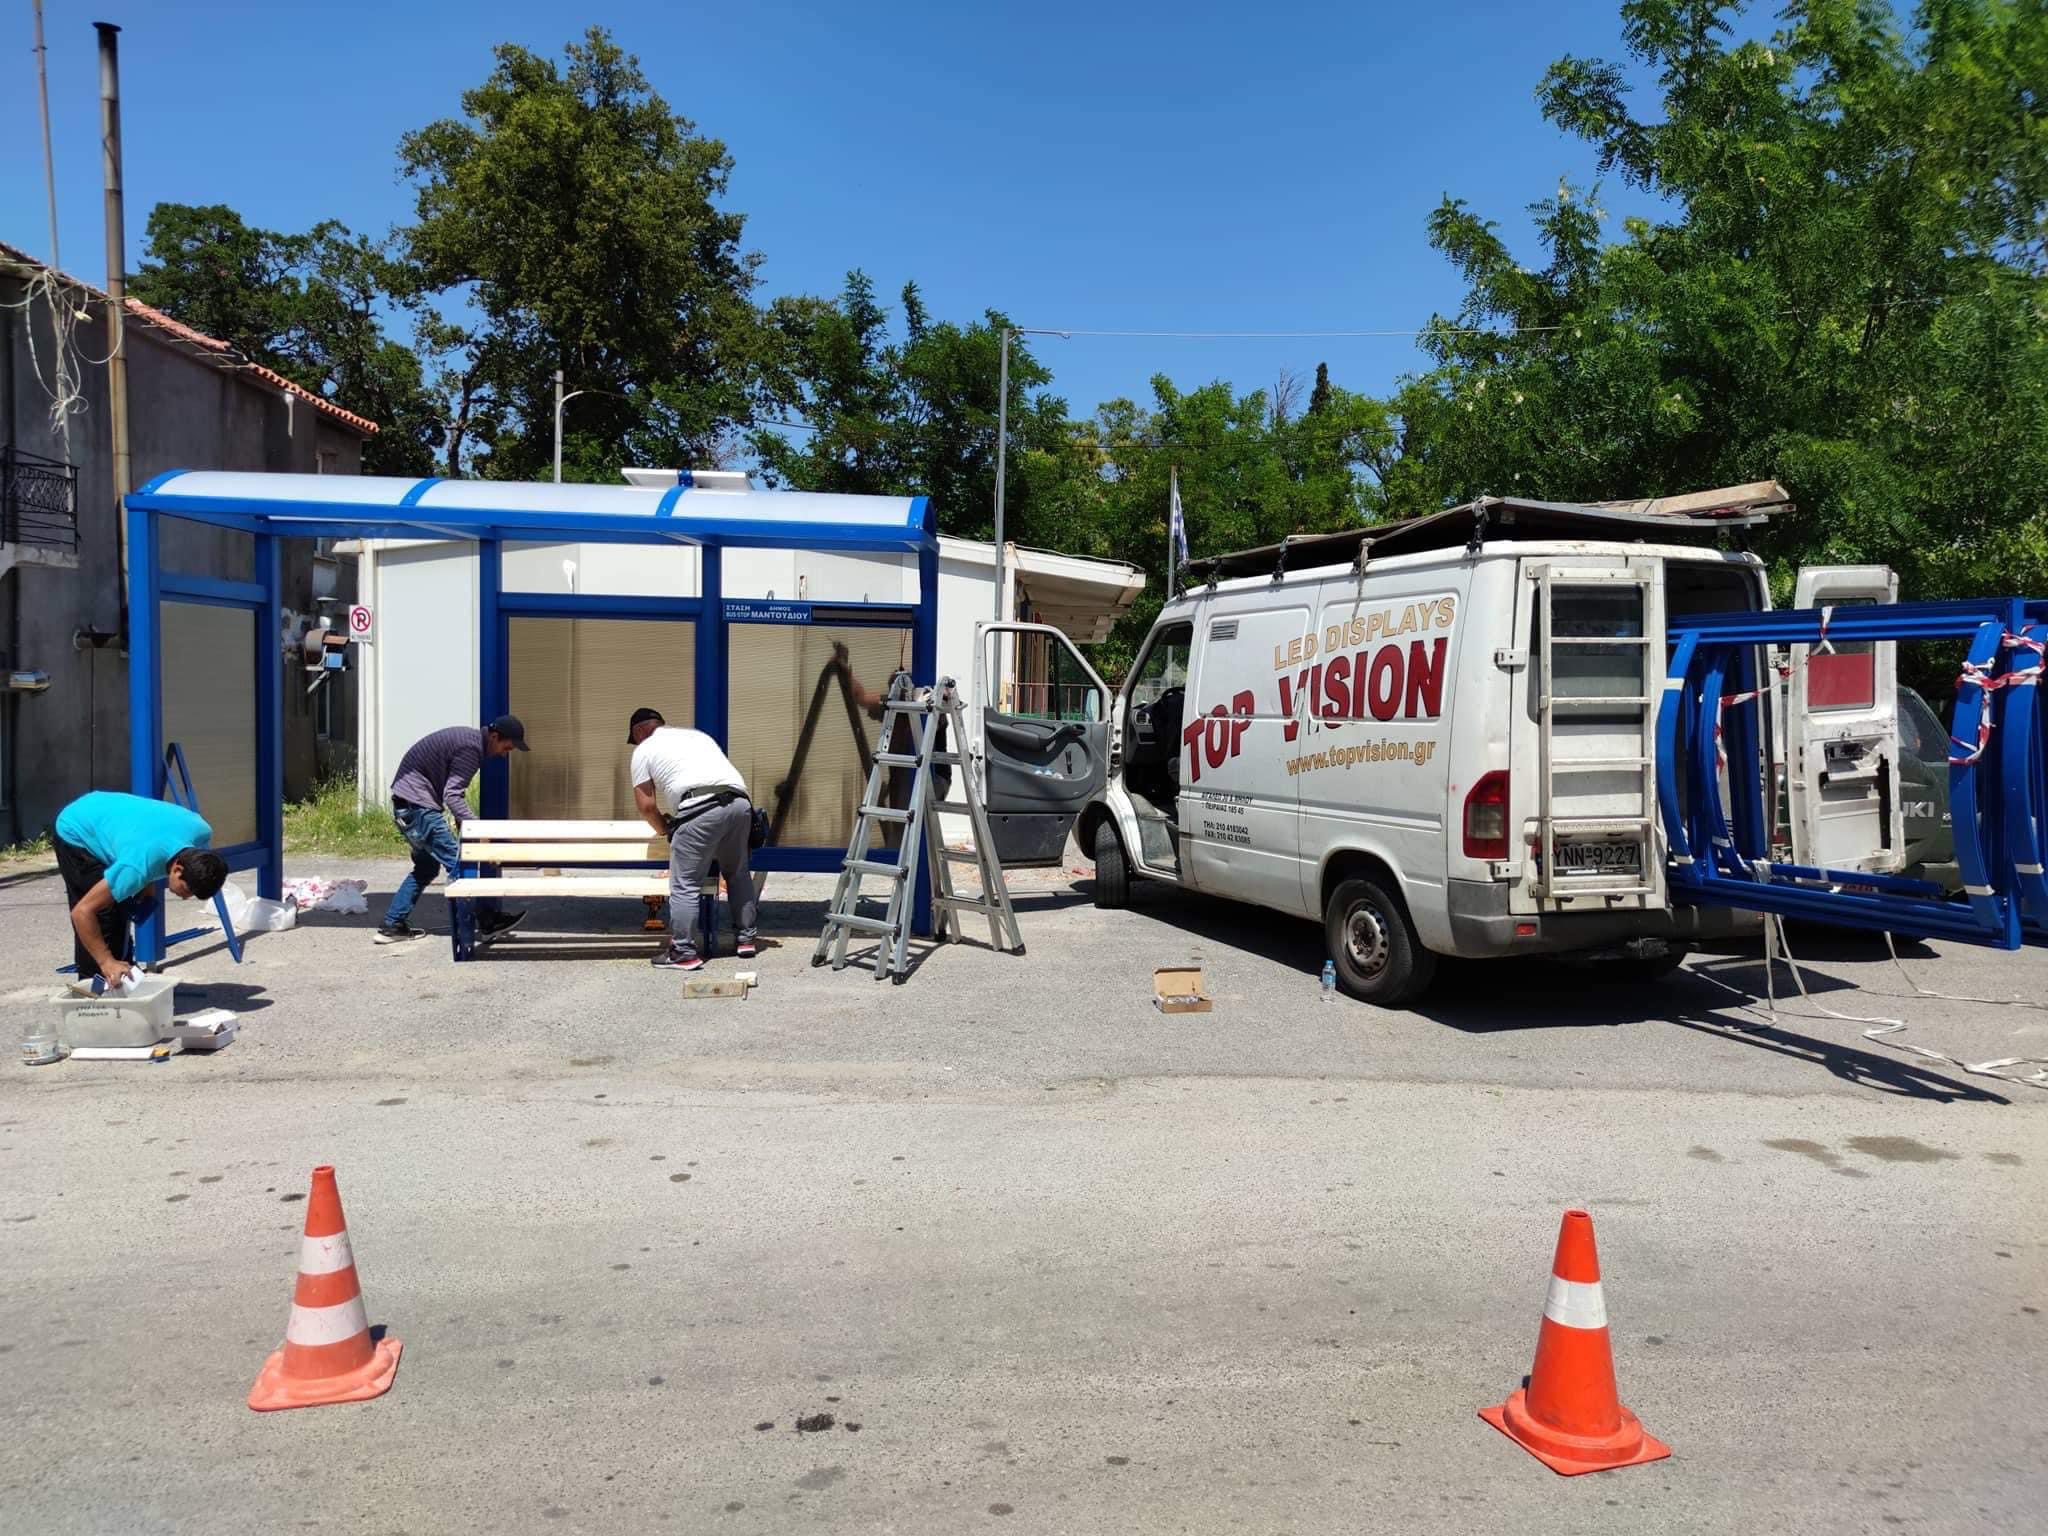 Τοποθετήθηκαν οι έξυπνες στάσεις λεωφορείου στον Δήμο Μαντουδίου Λίμνης Αγίας Άννας